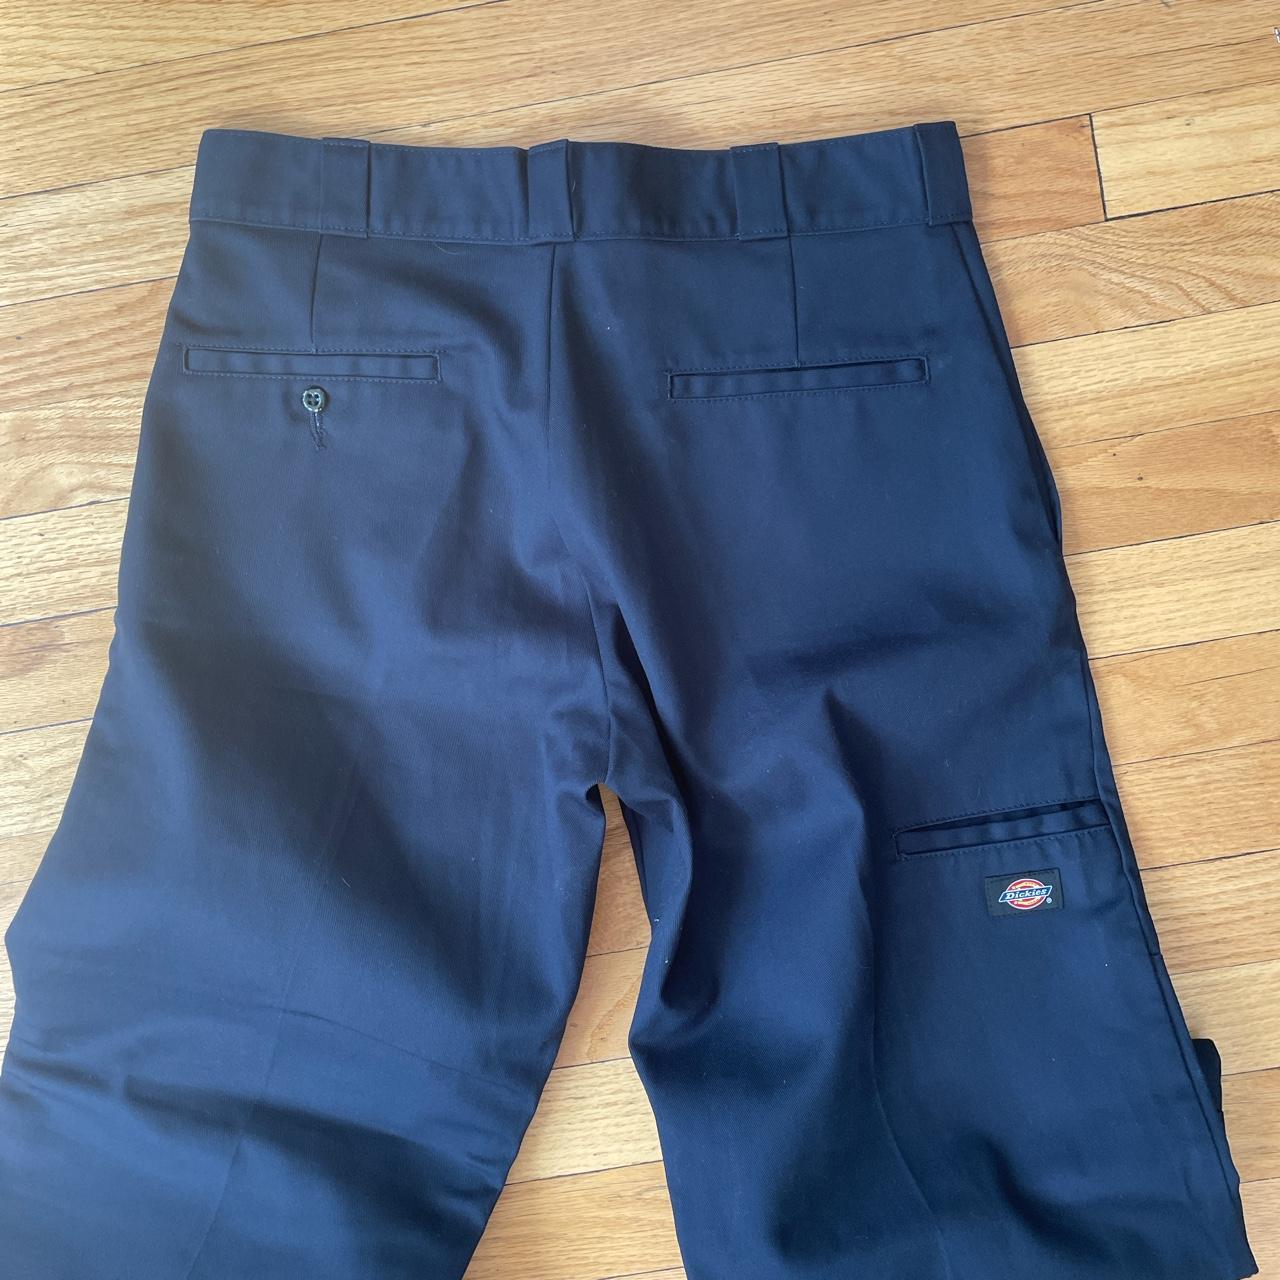 Vintage dickies double knee work pants navy blue... - Depop